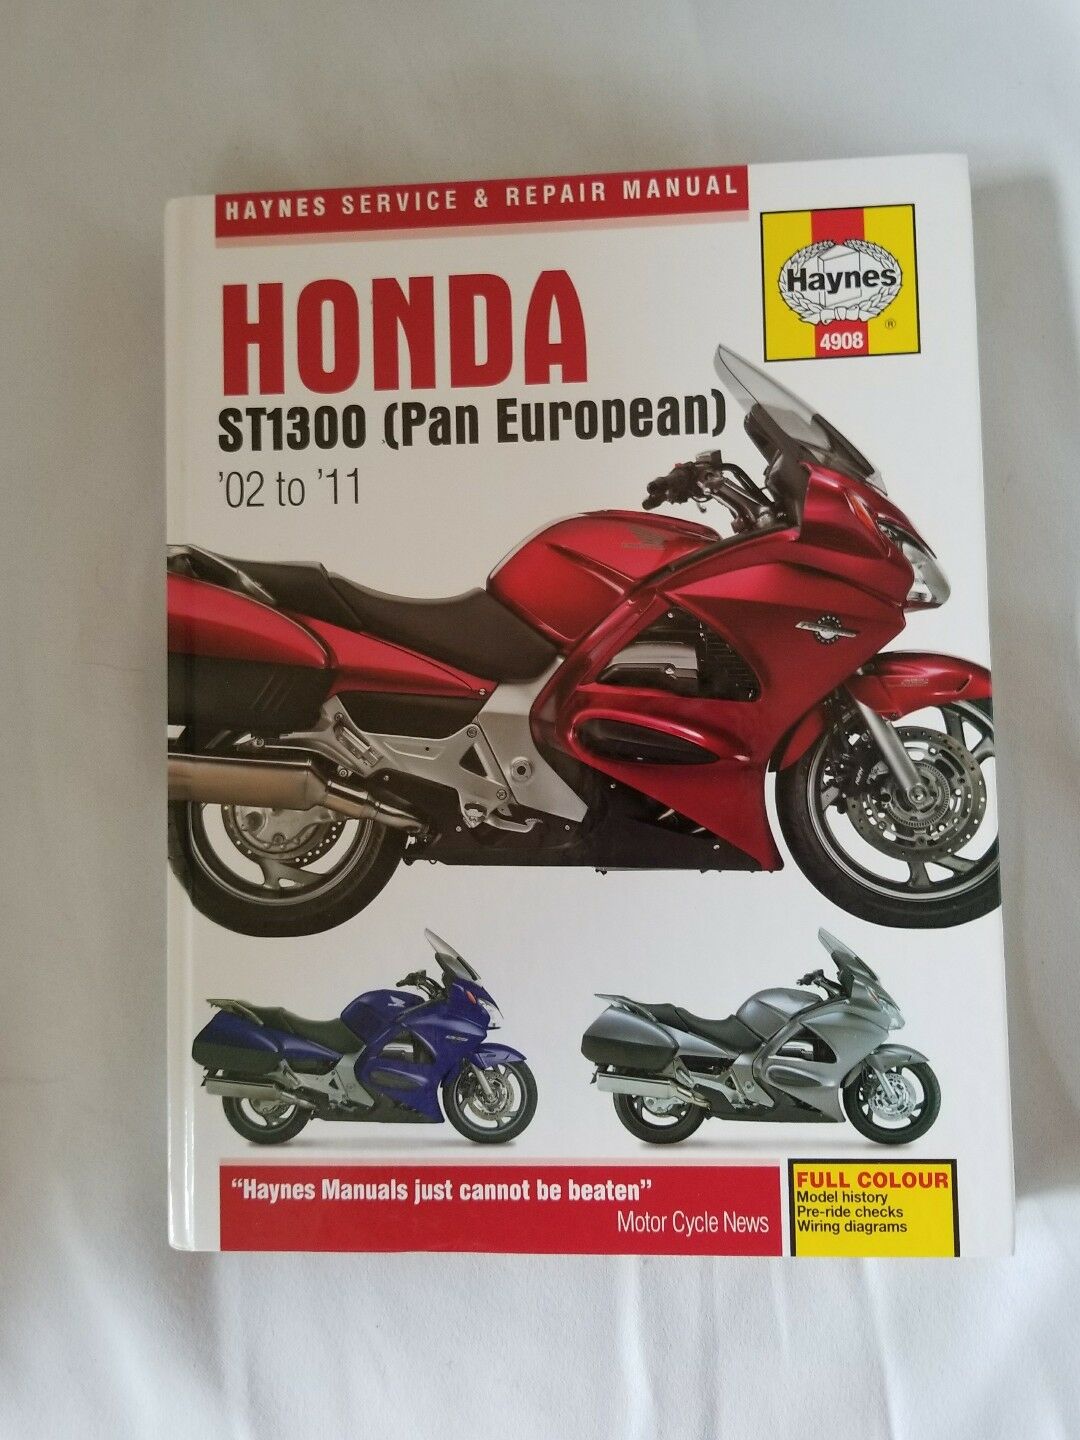 Мануалы и документация для Honda ST1300 Pan European